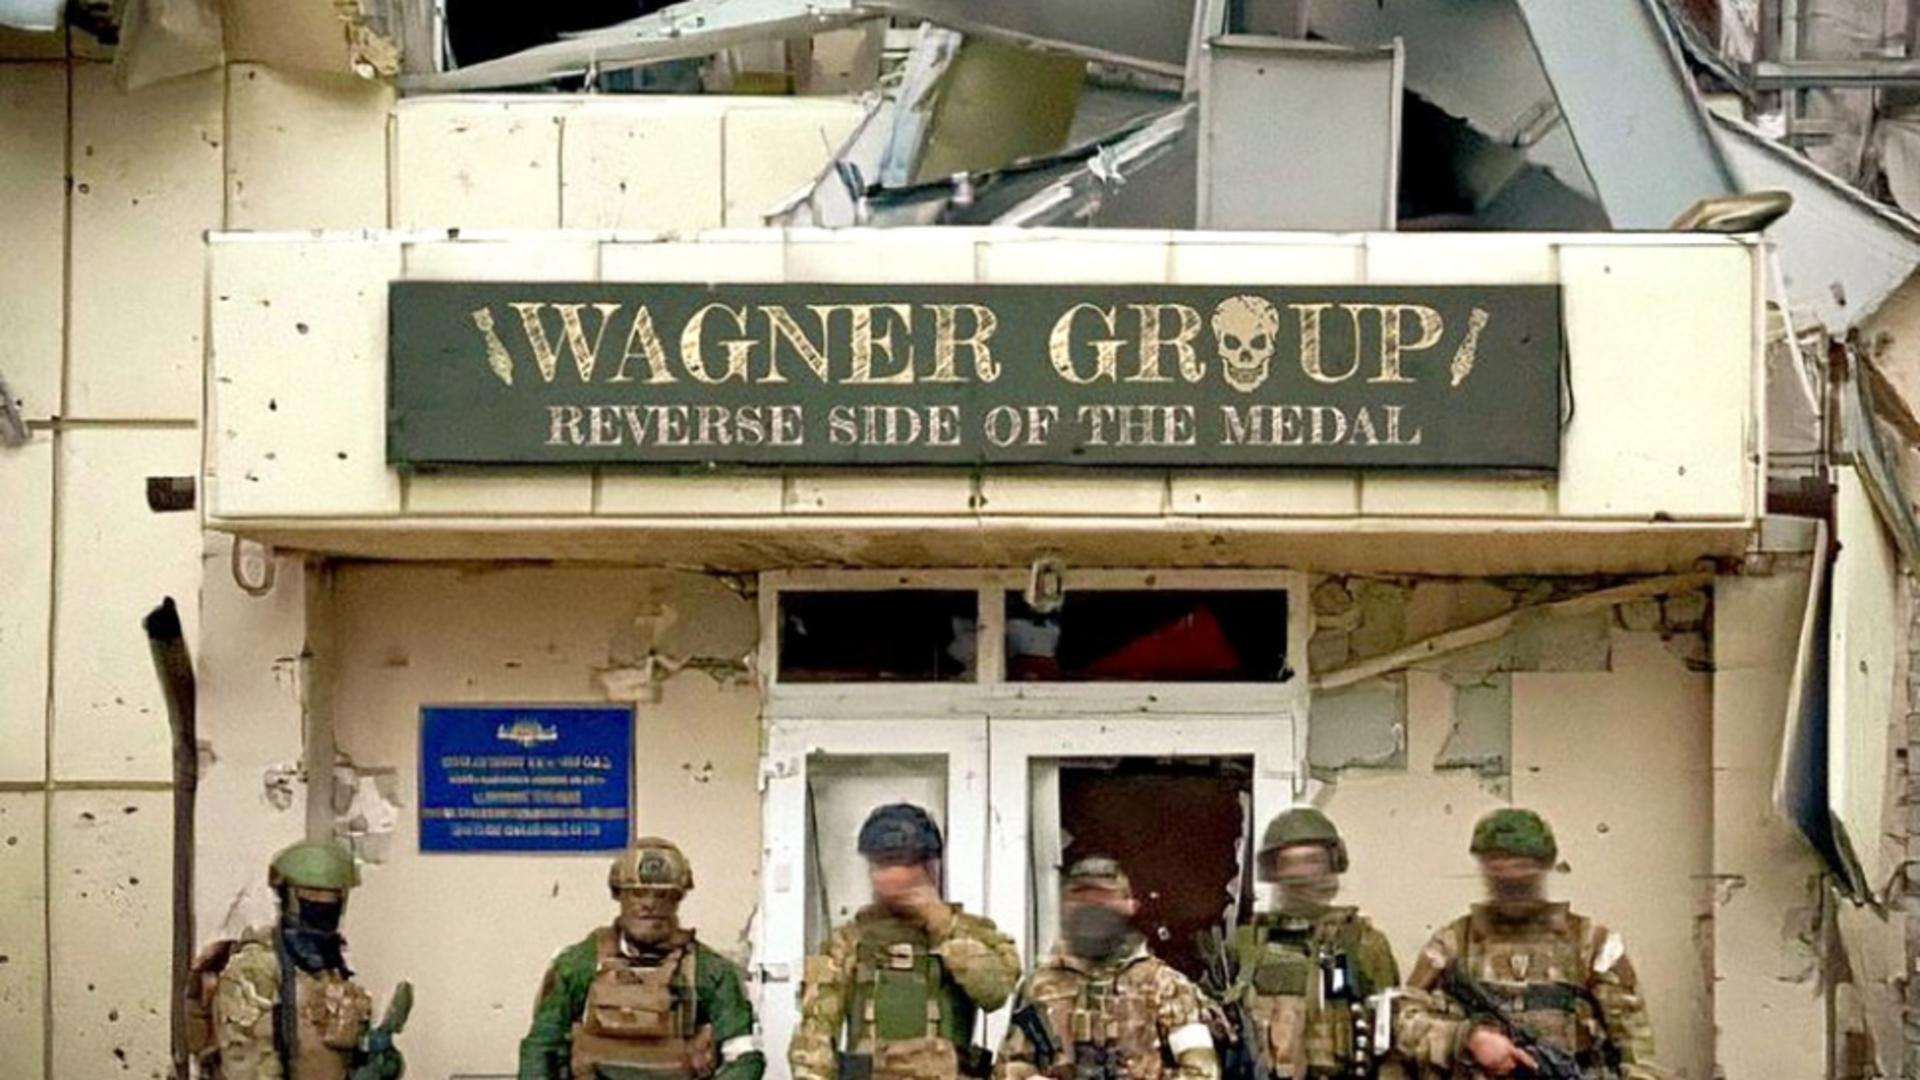 Ofițer britanic: „Wagner este mult mai mare decât războiul din Ucraina”. Dezvăluiri incendiare despre grupul de mercenari activ în peste 30 de țări